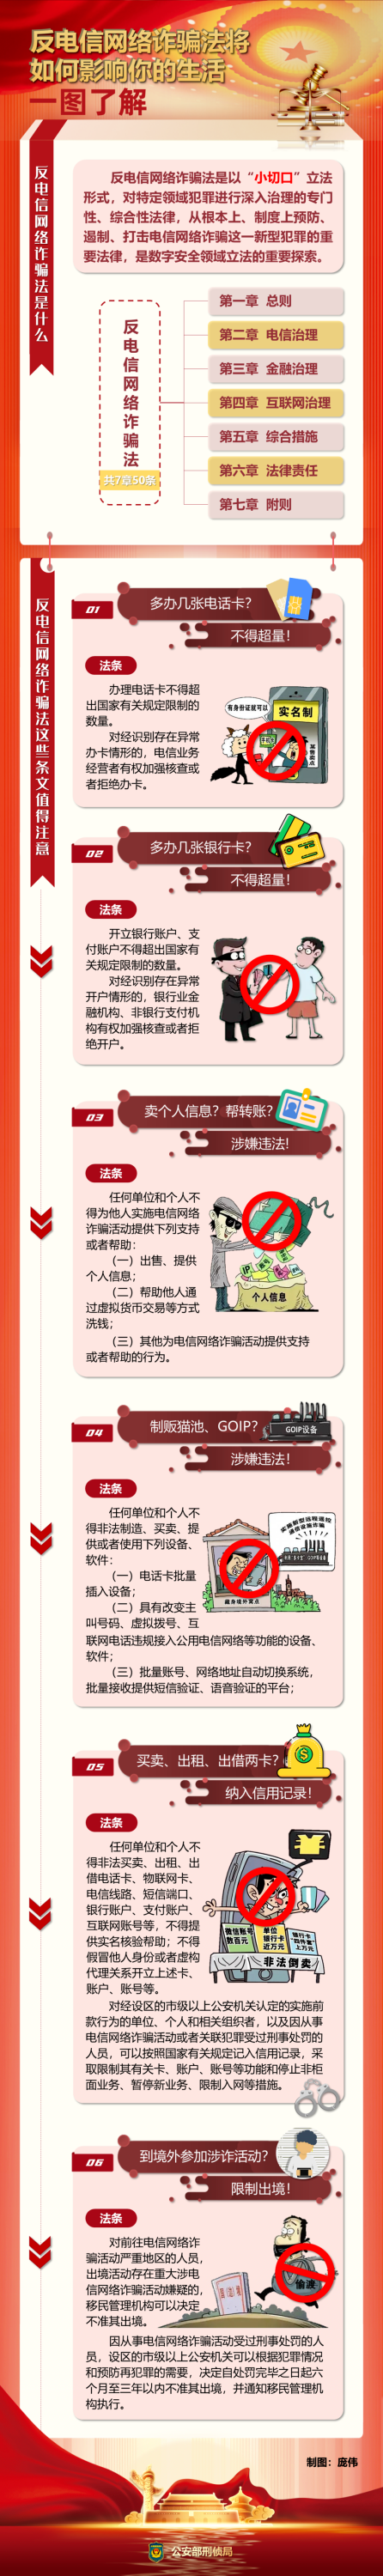 一图了解《中华人民共和国反电信网络诈骗法》.png